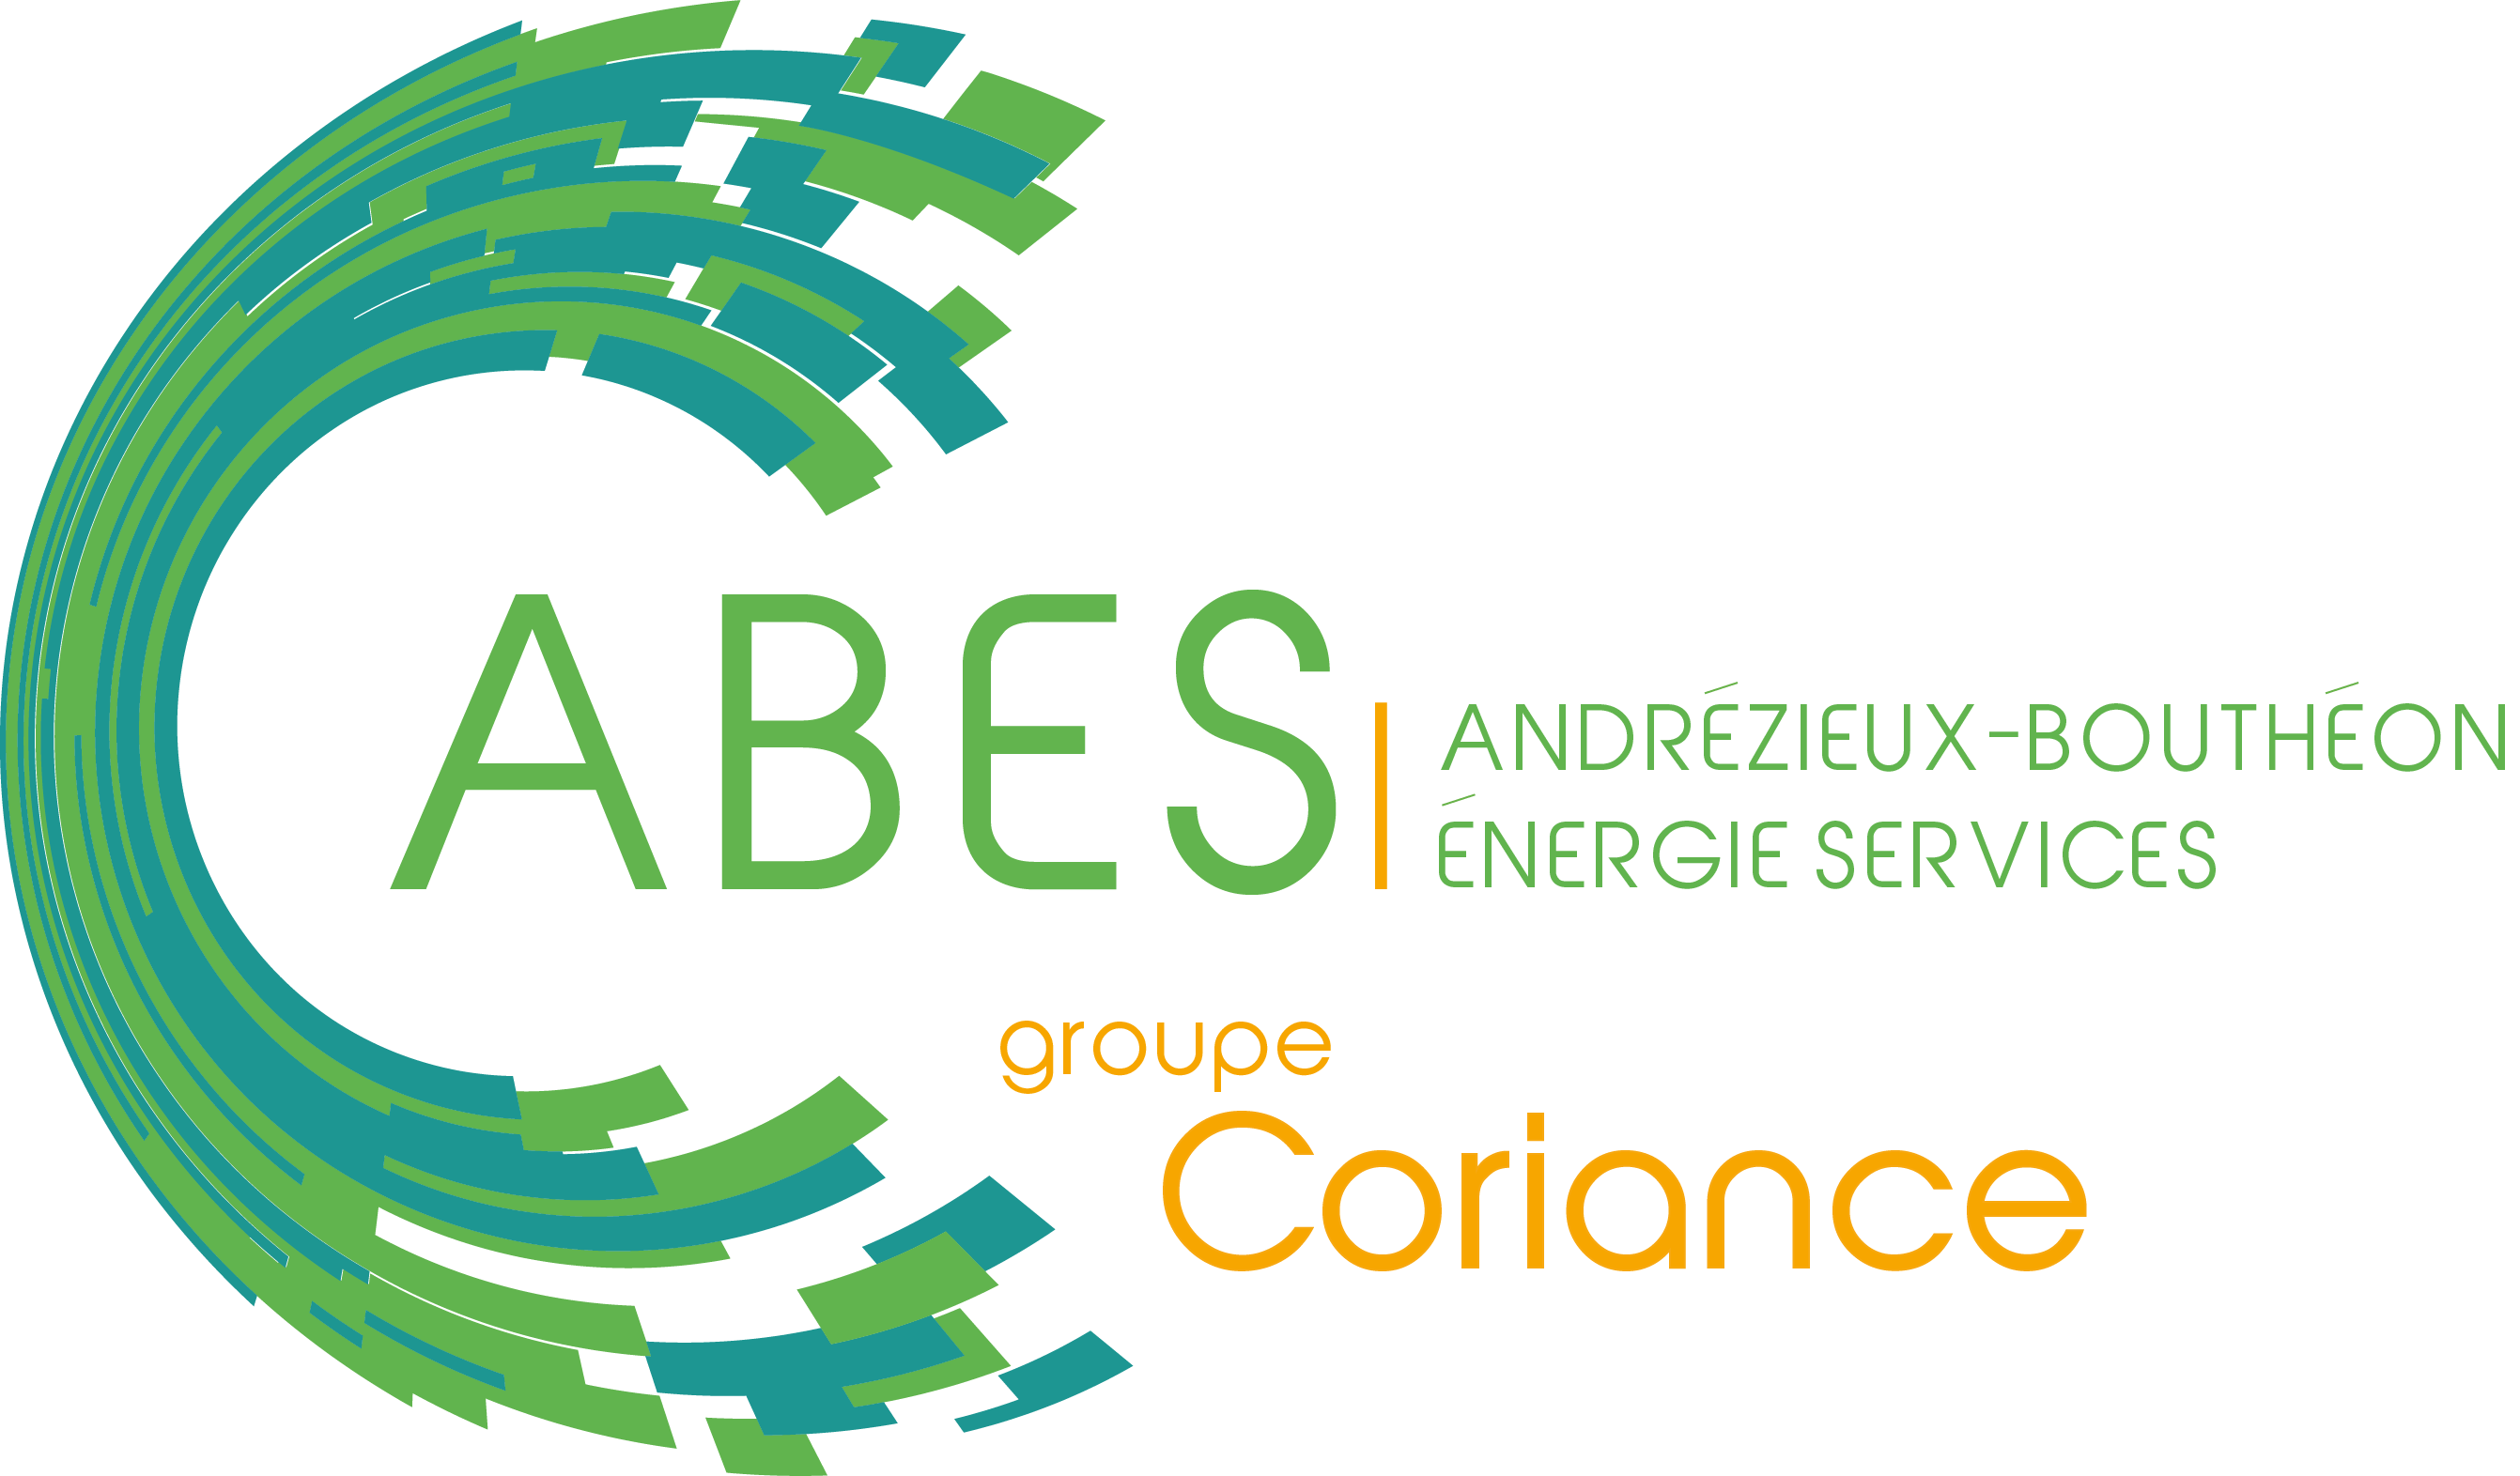 Andrézieux-Bouthéon Energie Services